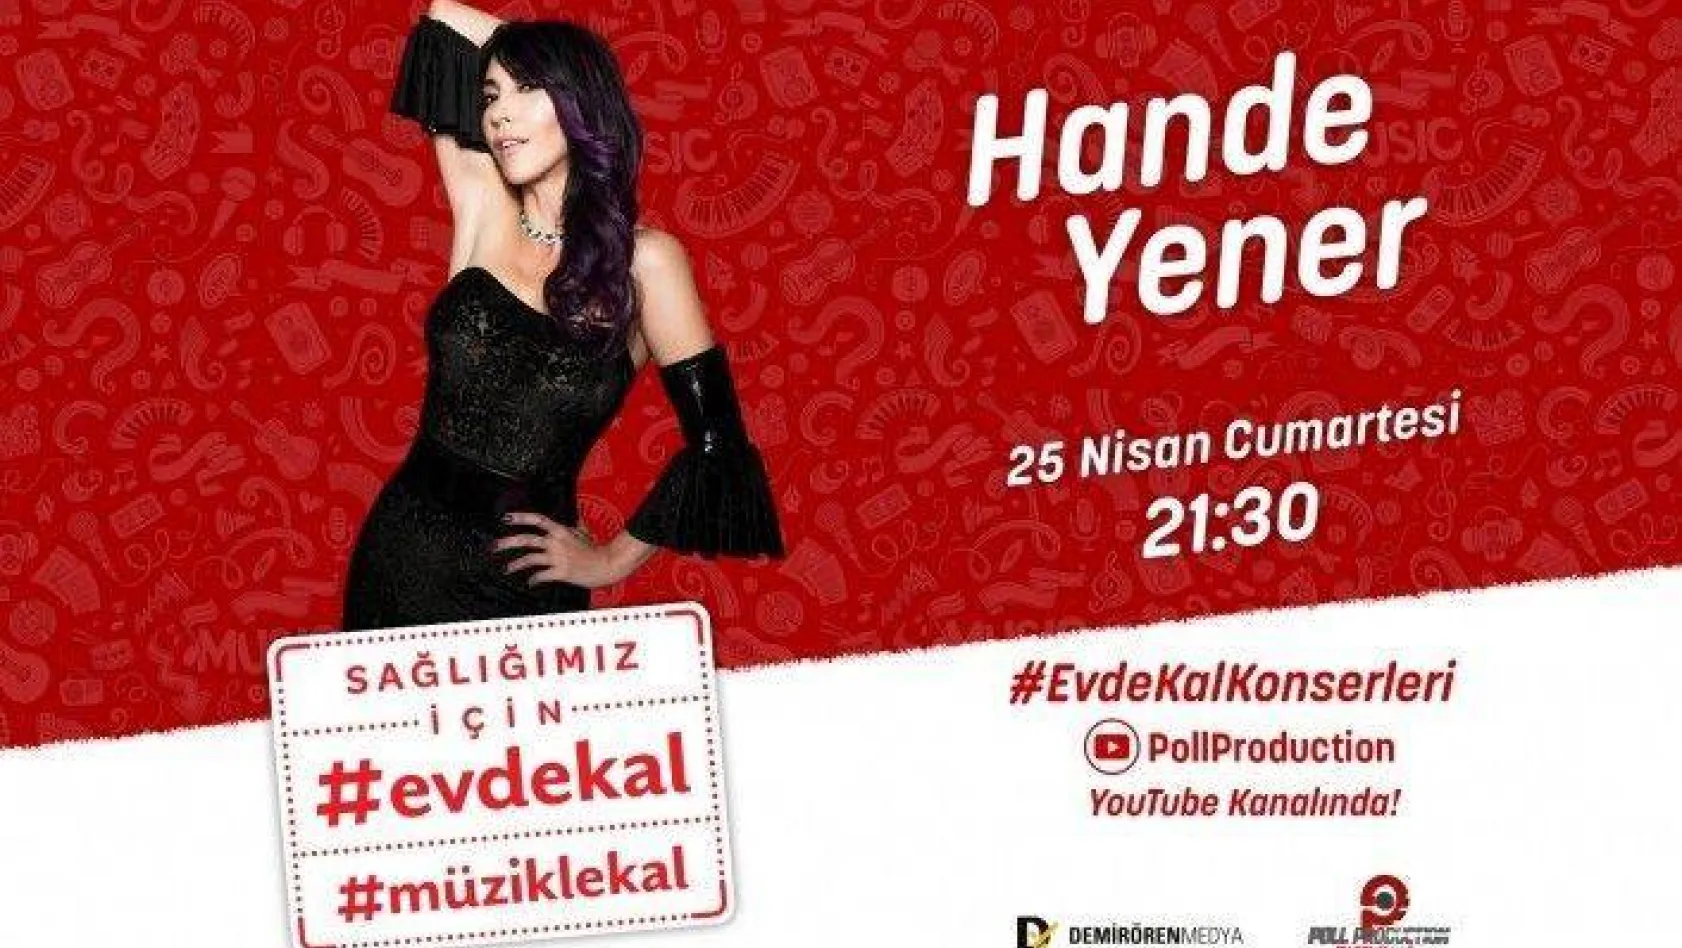 Hande Yener açık hava konseri ve canlı yayınıyla moral olacak